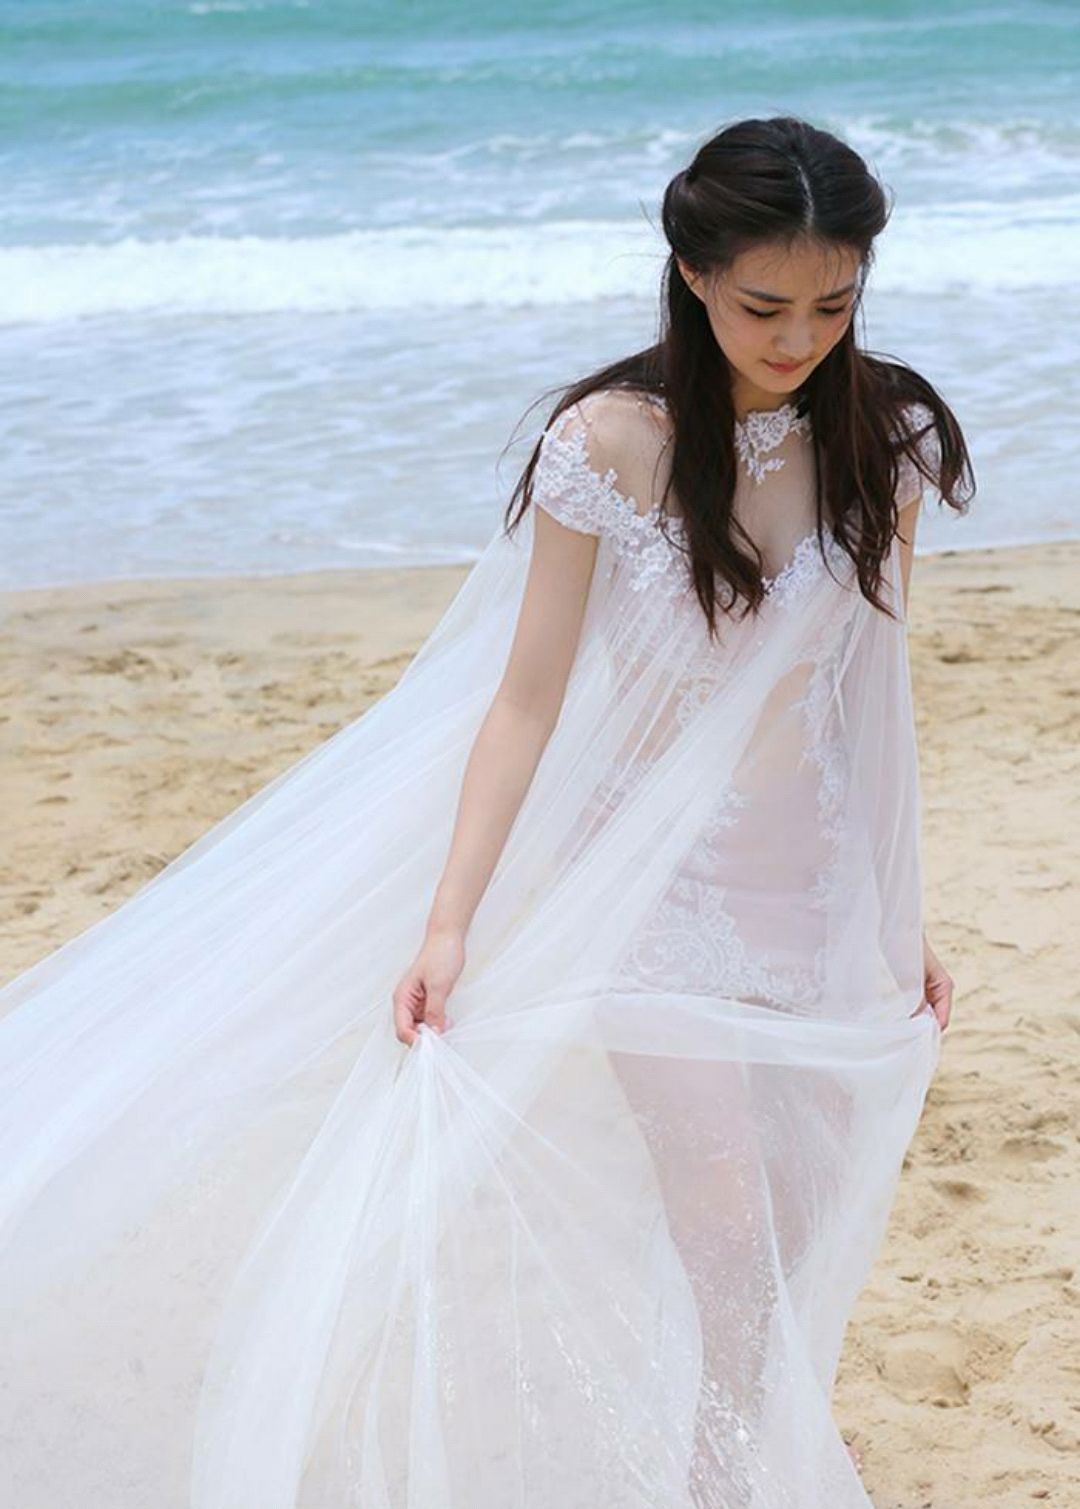 徐璐:徐璐身穿一件白色透视装的纱裙,披着秀发在海边走着,完美的身材